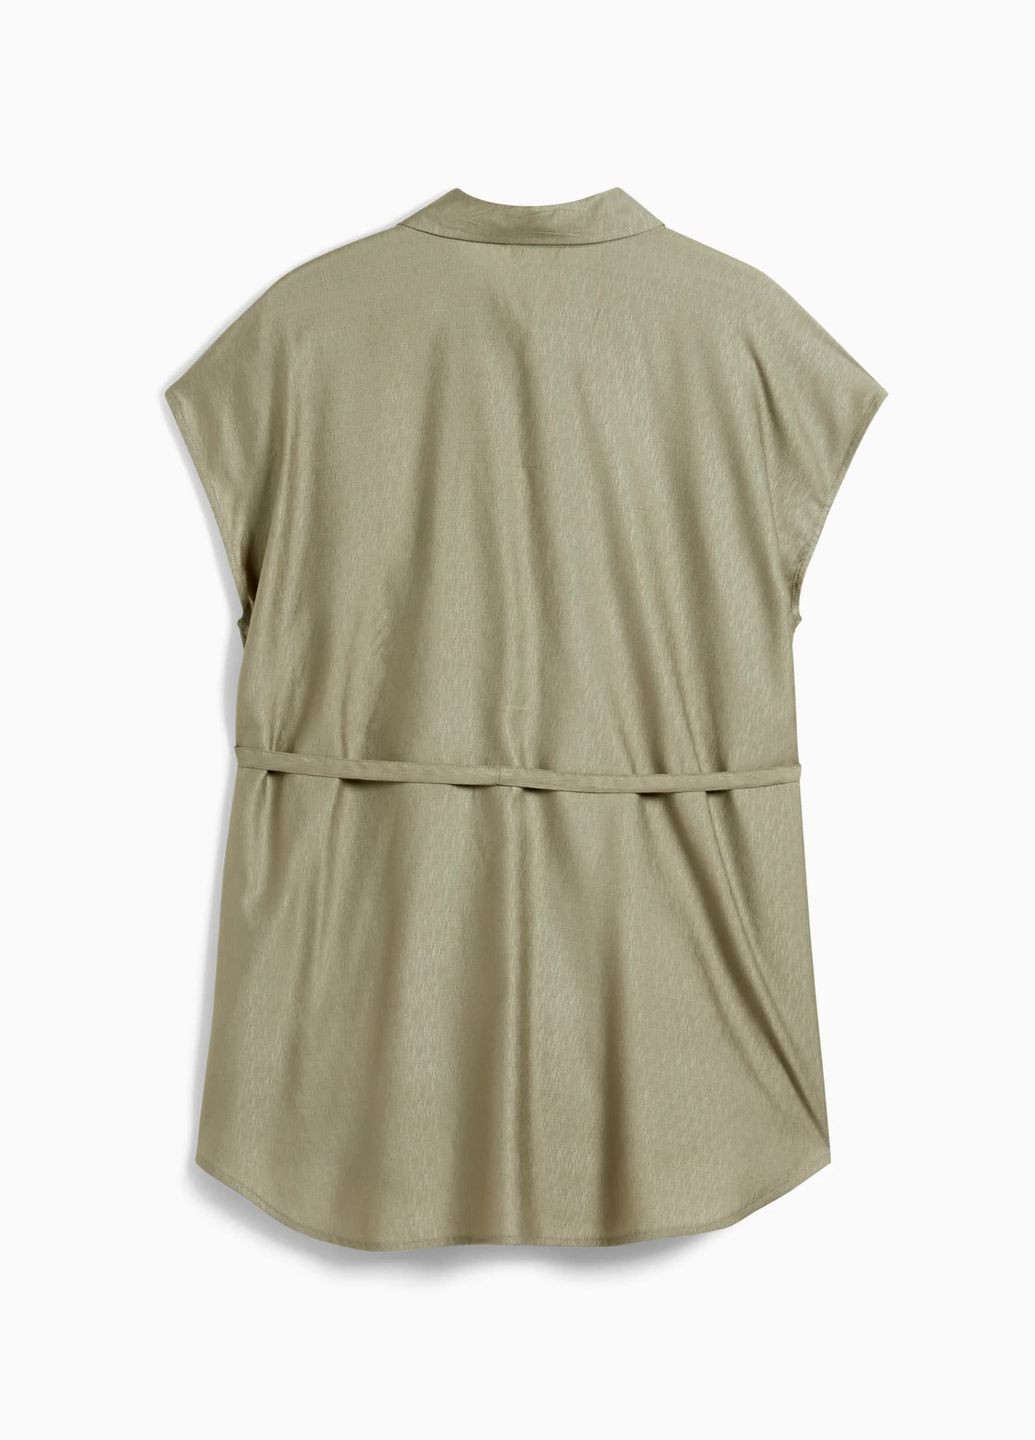 Оливковая (хаки) летняя блуза для беременных C&A